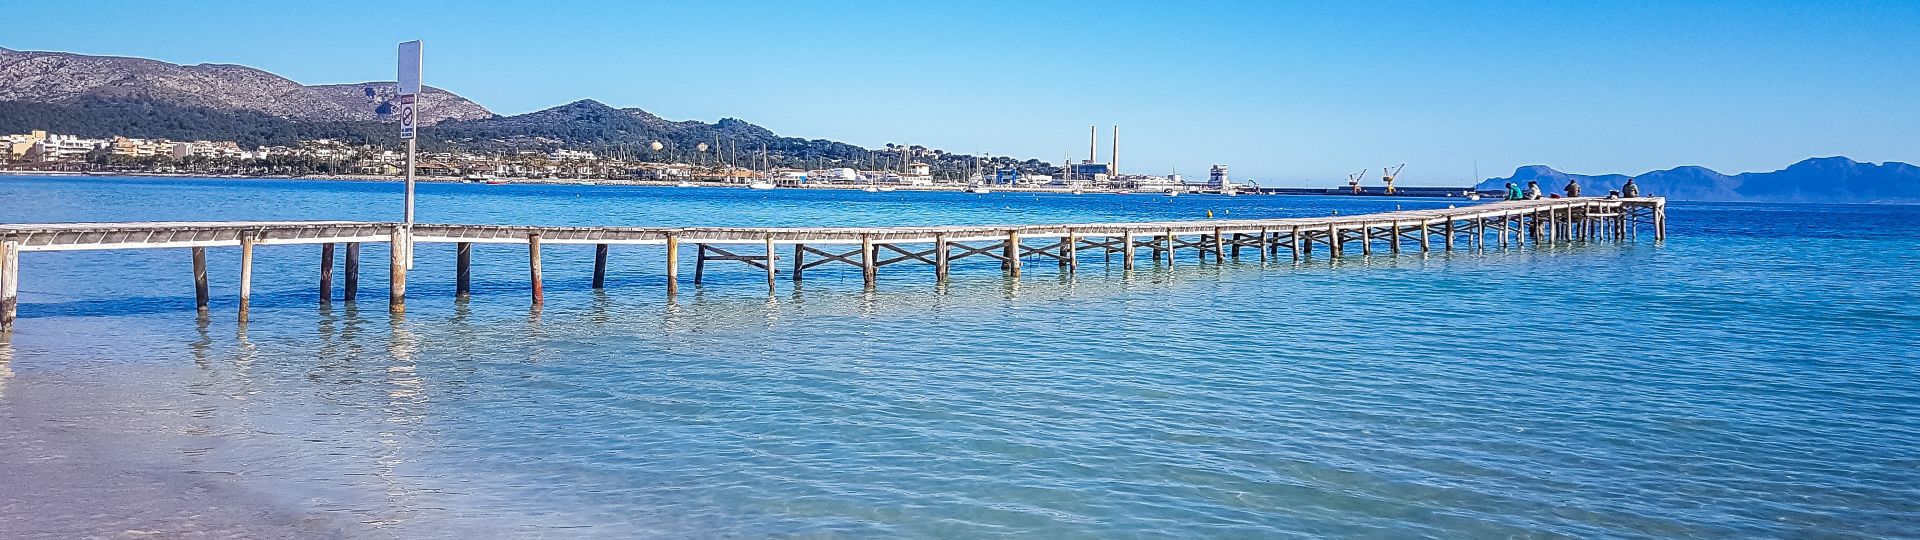 Bay of Alcudia, Mallorca